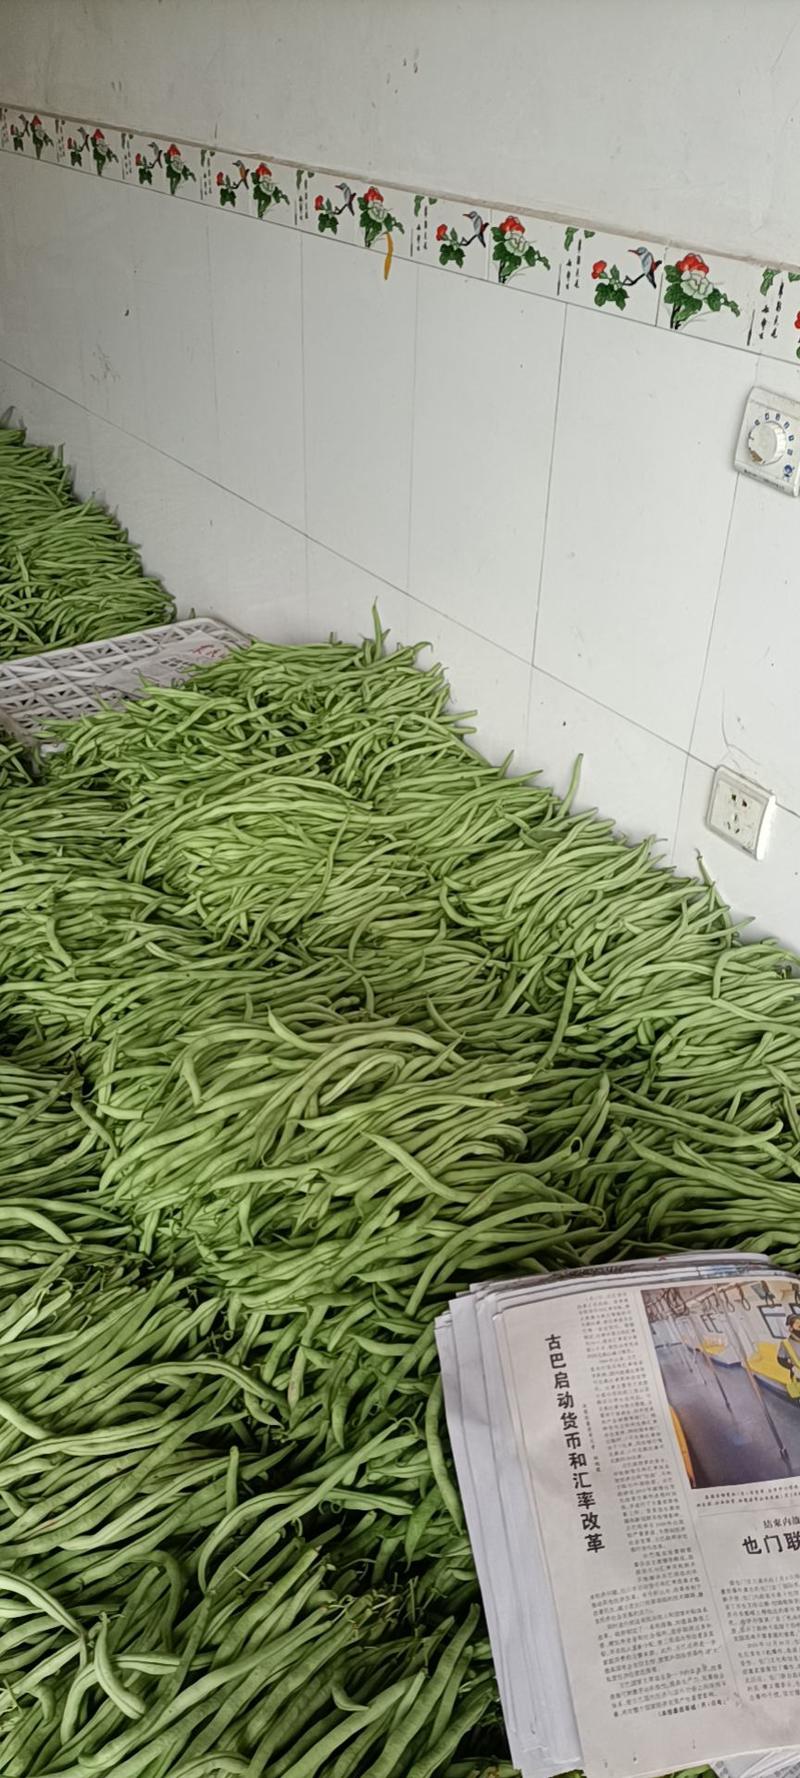 夹江无经豆4月份开始大量上市。现在预售阶段。